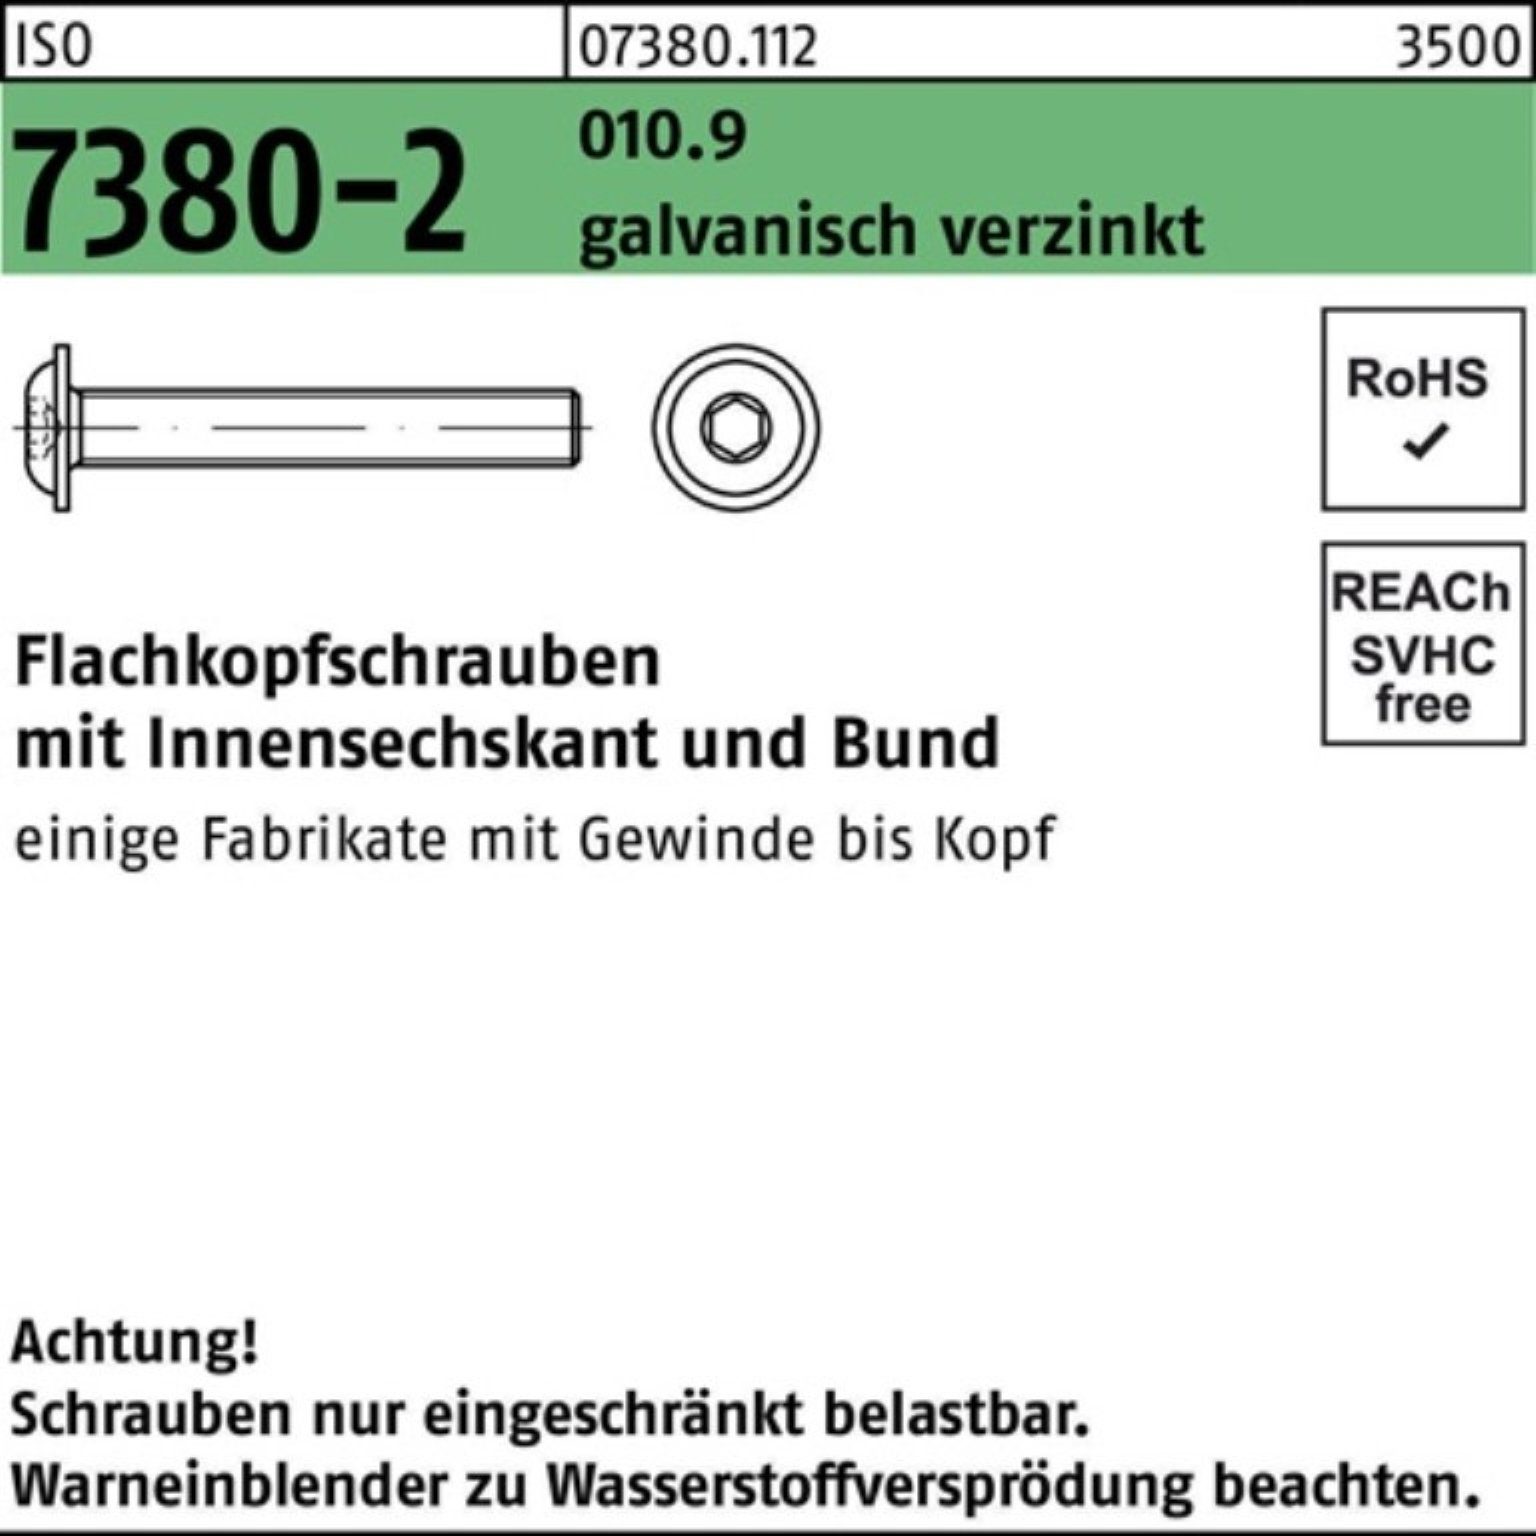 Bund/Innen-6kt 7380-2 500er 010.9 ISO gal Schraube M6x25 Flachkopfschraube Reyher Pack